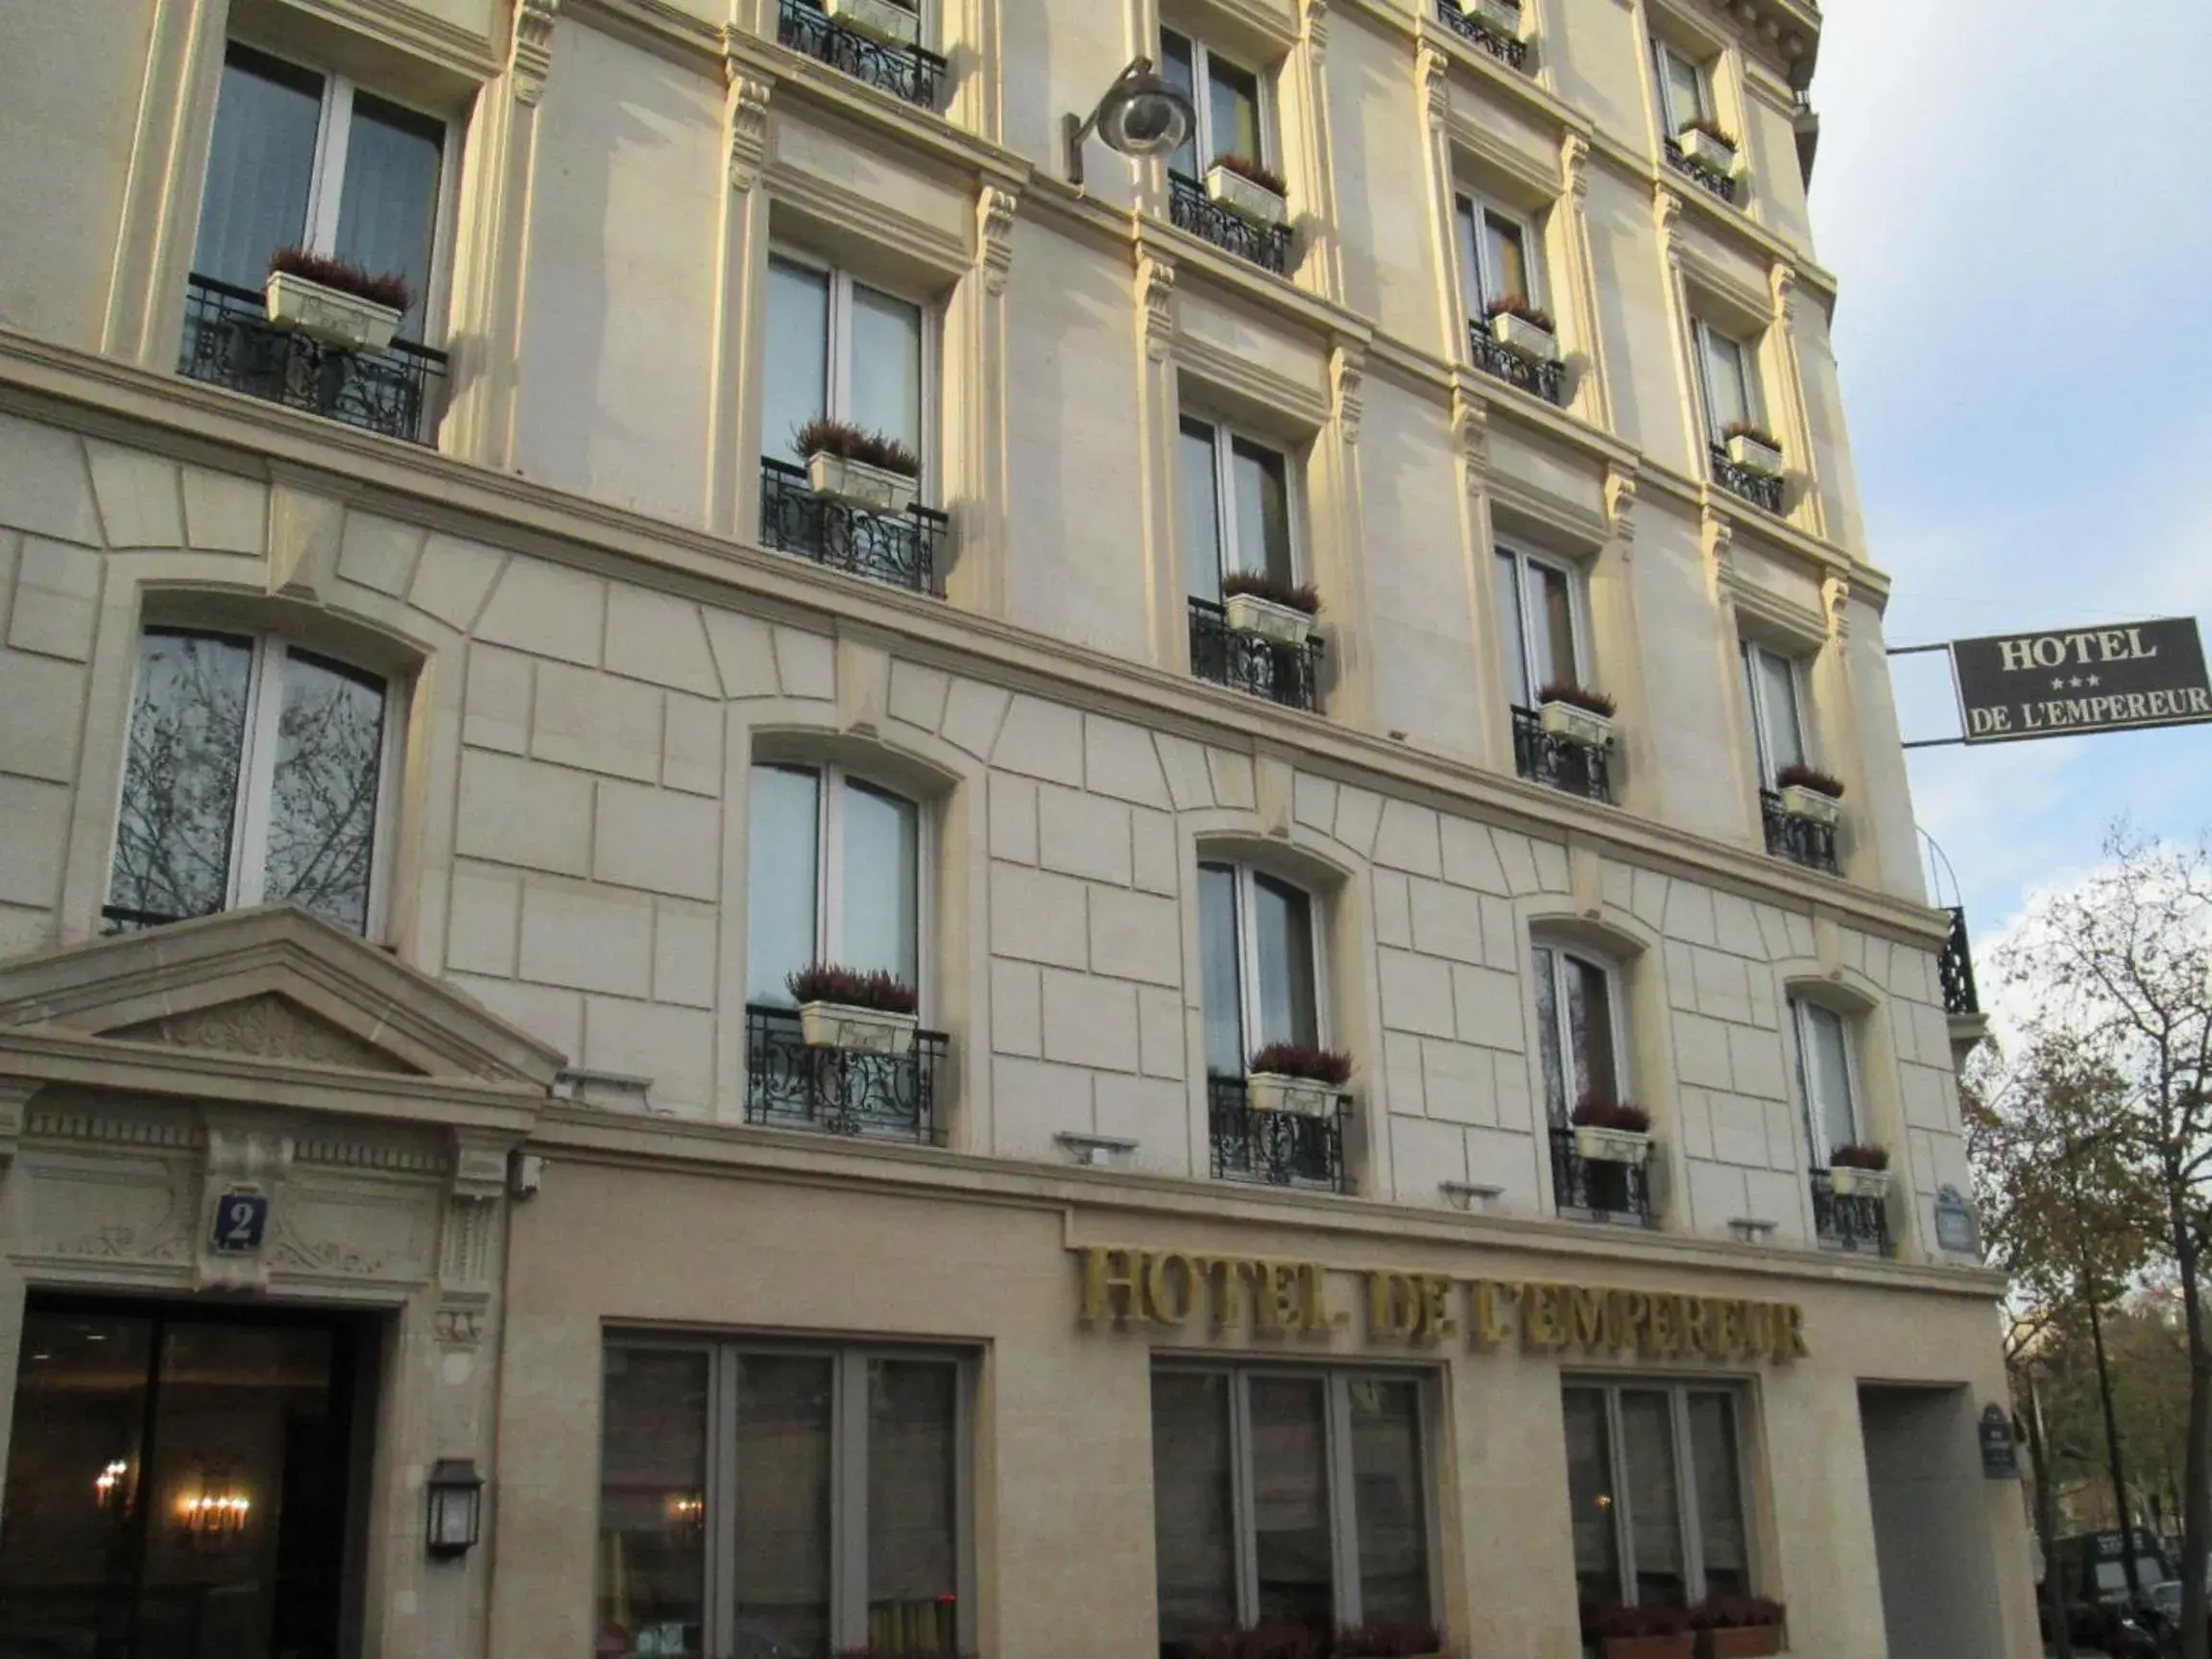 Facade/entrance, Property Building in Hotel de L'Empereur by Malone